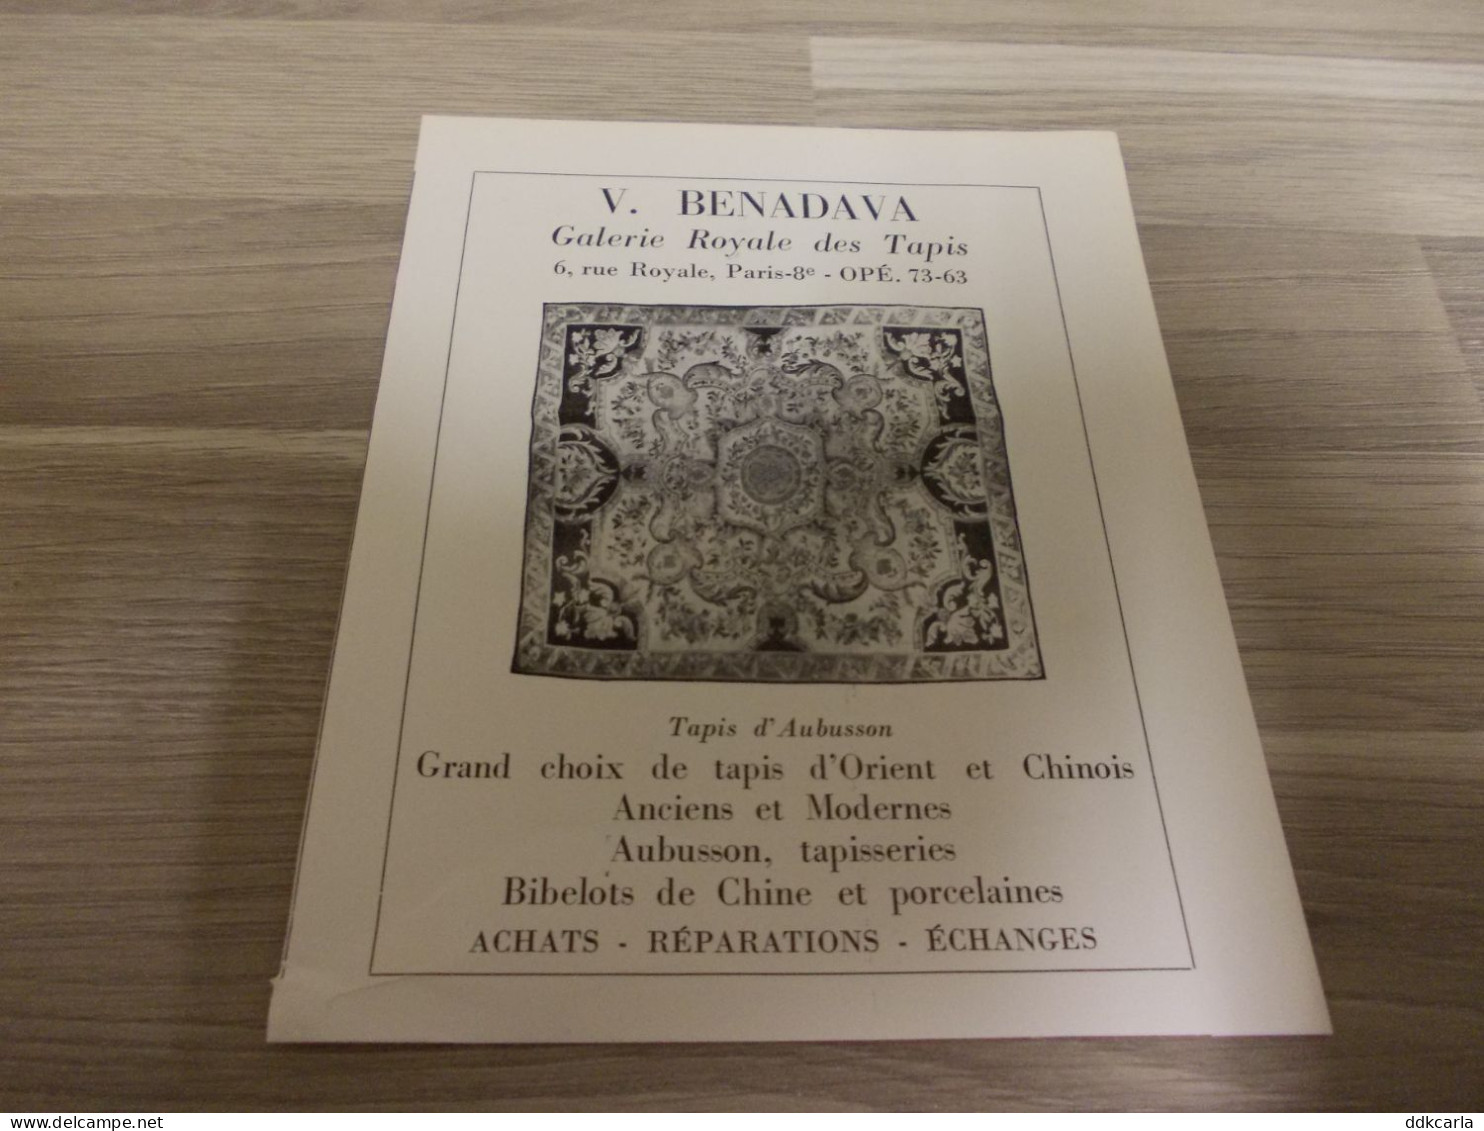 Reclame Advertentie Uit Oud Tijdschrift 1956 - V. BENADAVA Galerie Royale Des Tapis - Tapis D'Aubusson - Pubblicitari